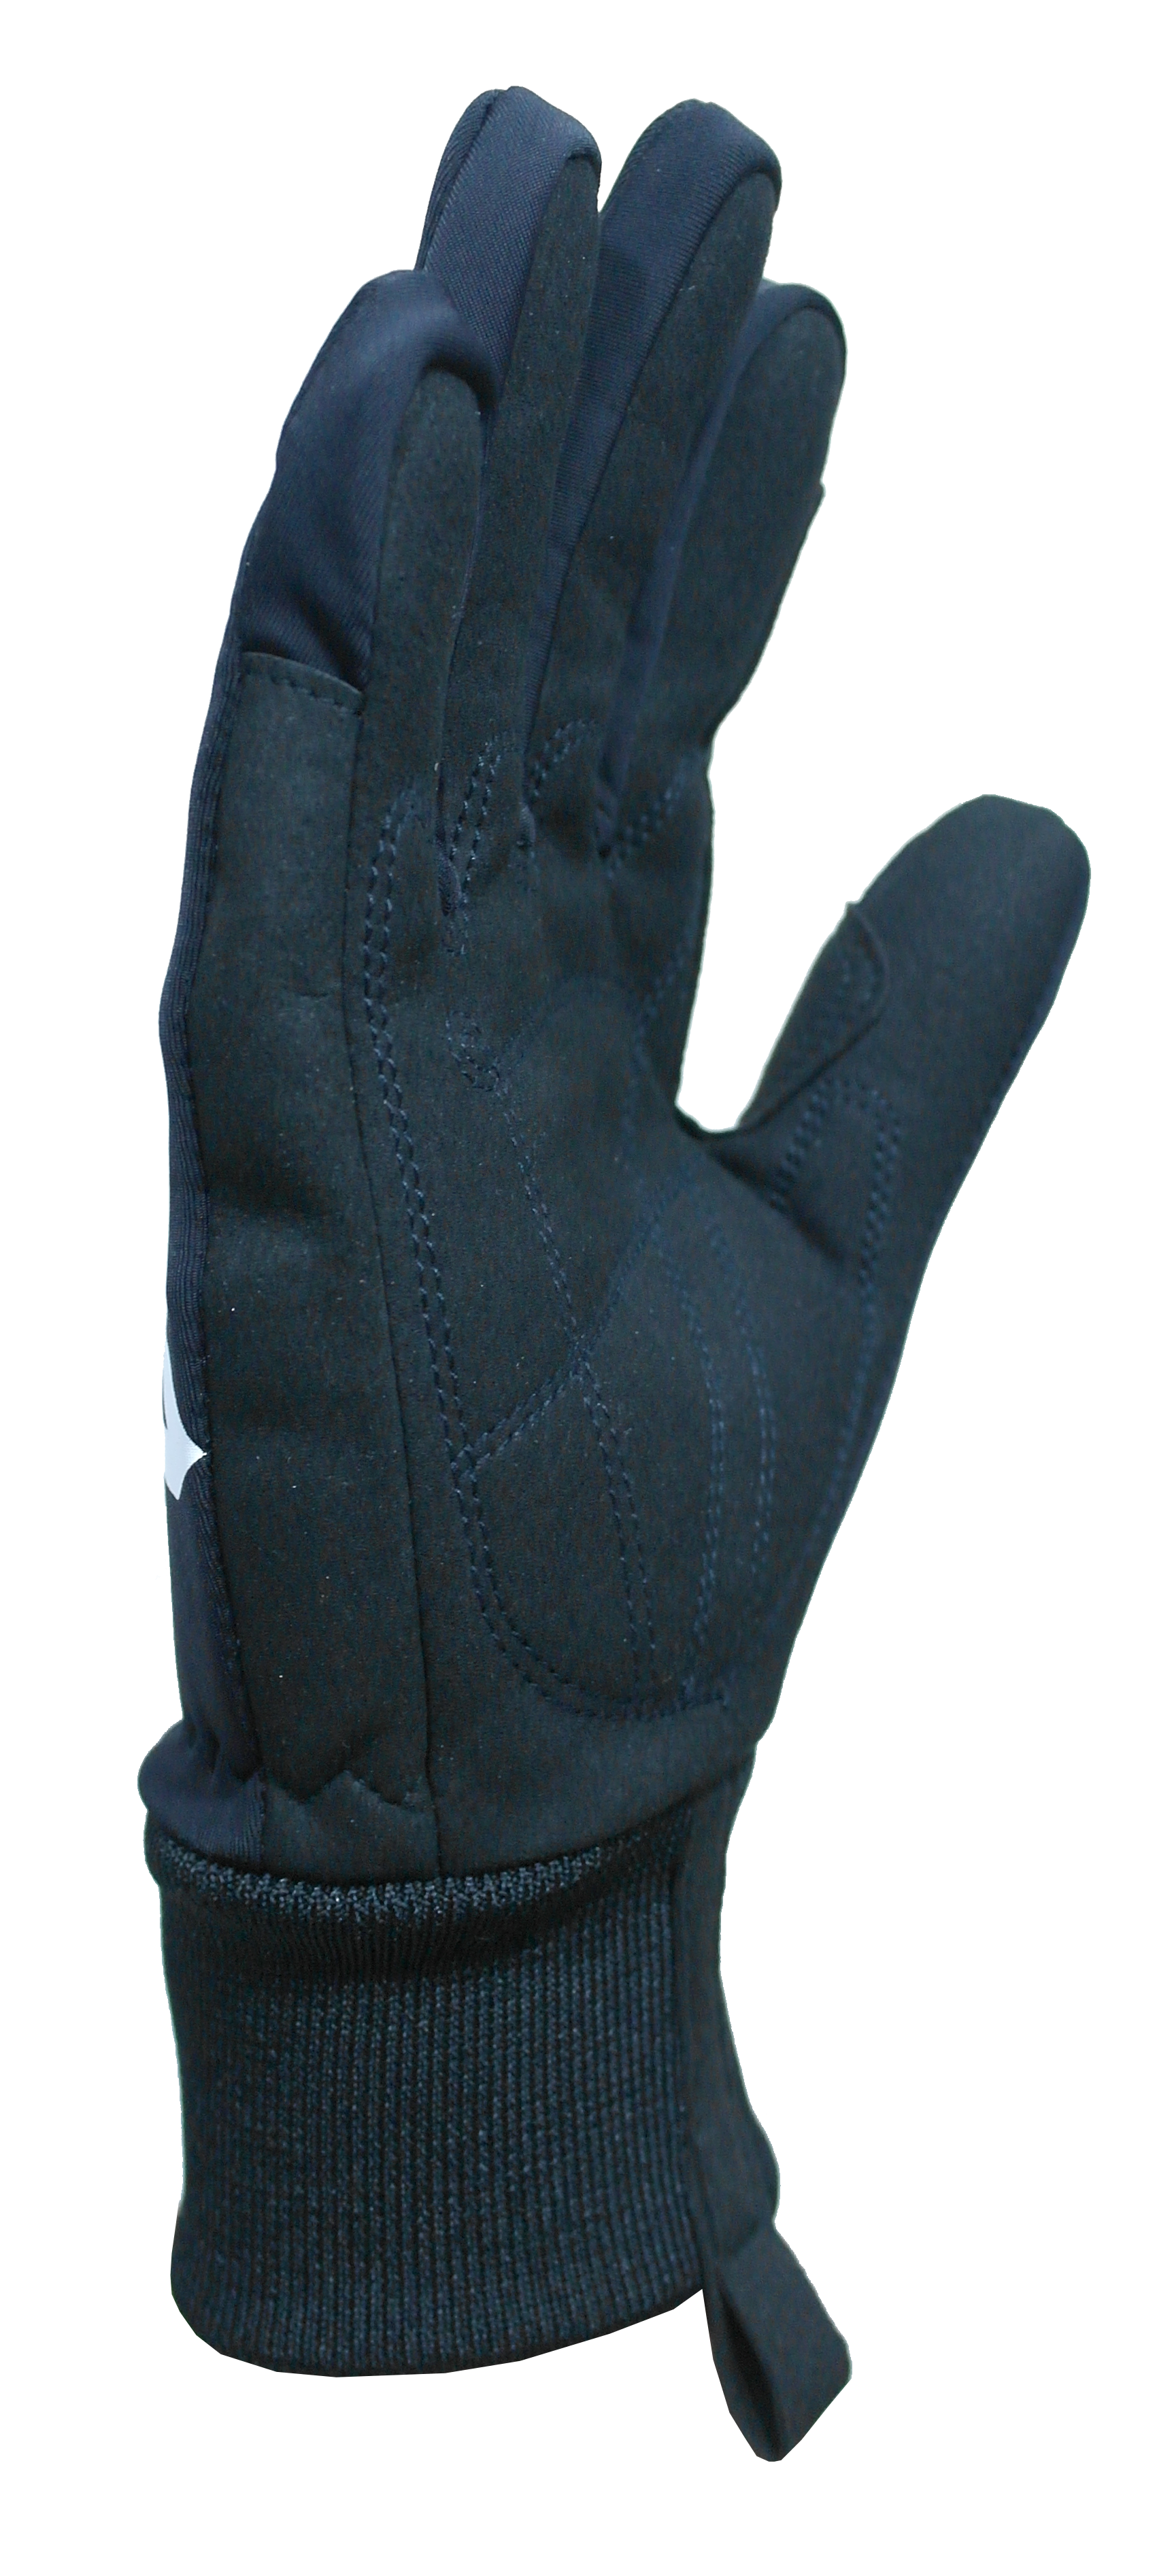 Davinci Gloves